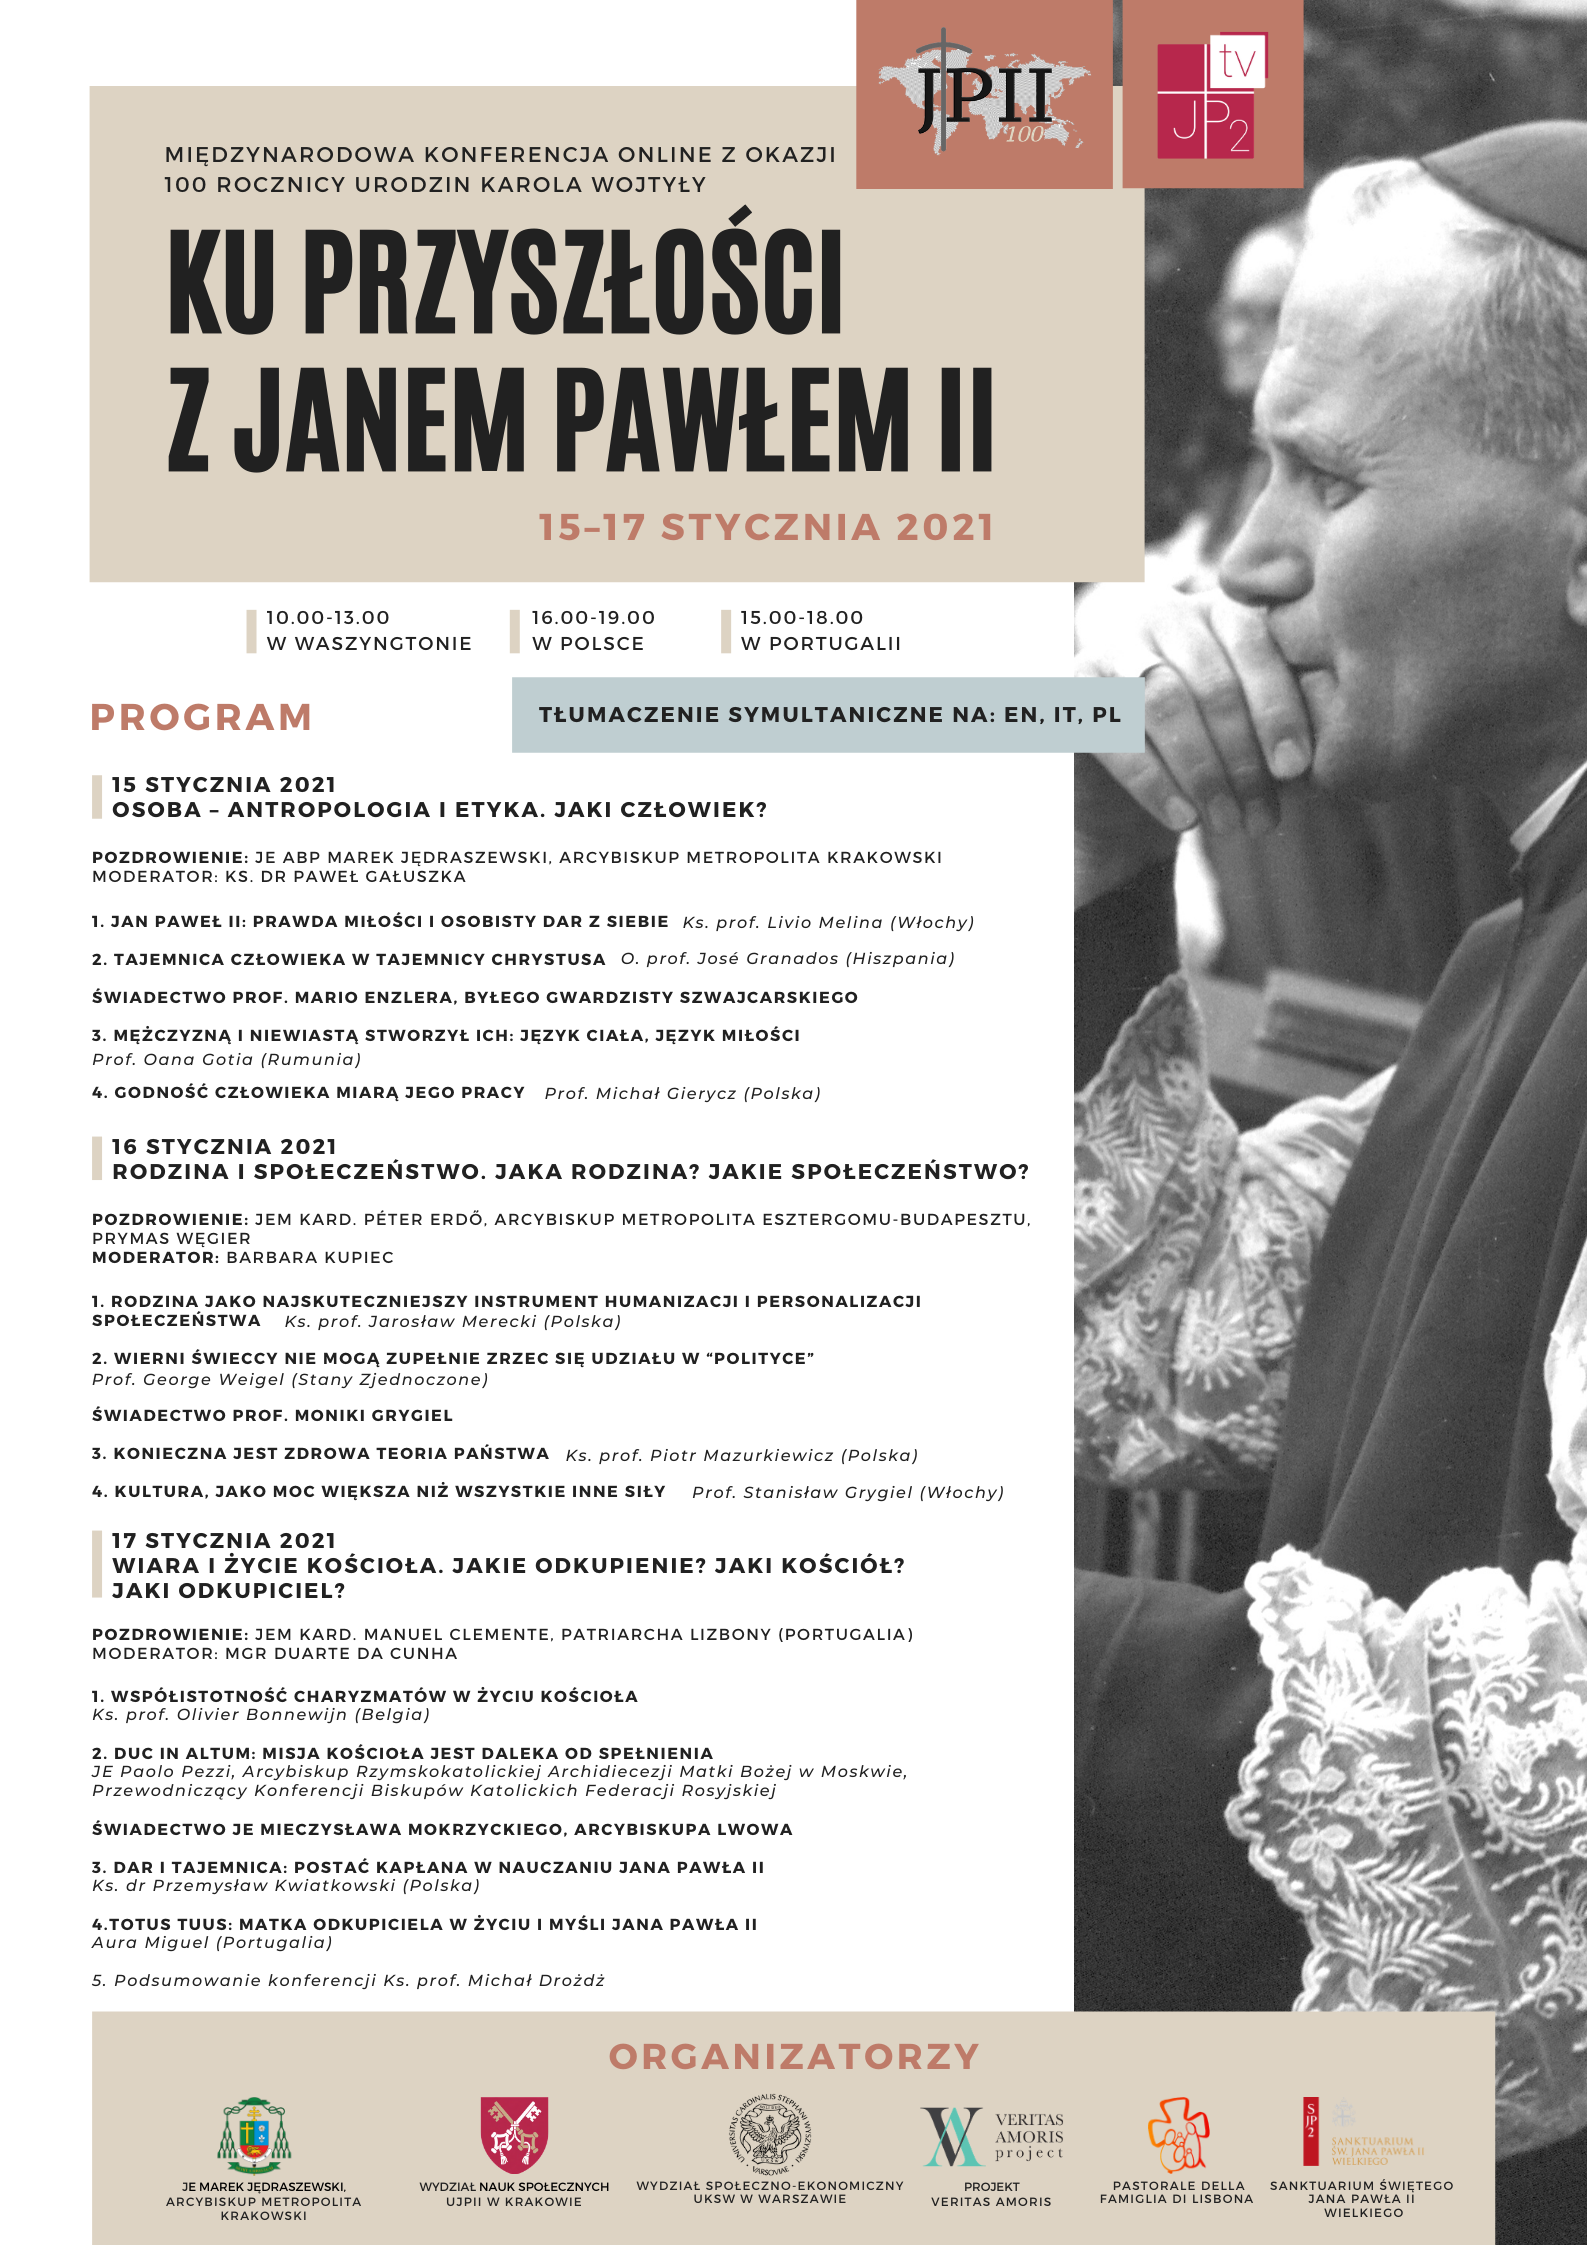 2. Dzień Międzynarodowej Konferencji z okazji 100. rocznicy urodzin Karola Wojtyły “Ku przyszłości z Janem Pawłem II”